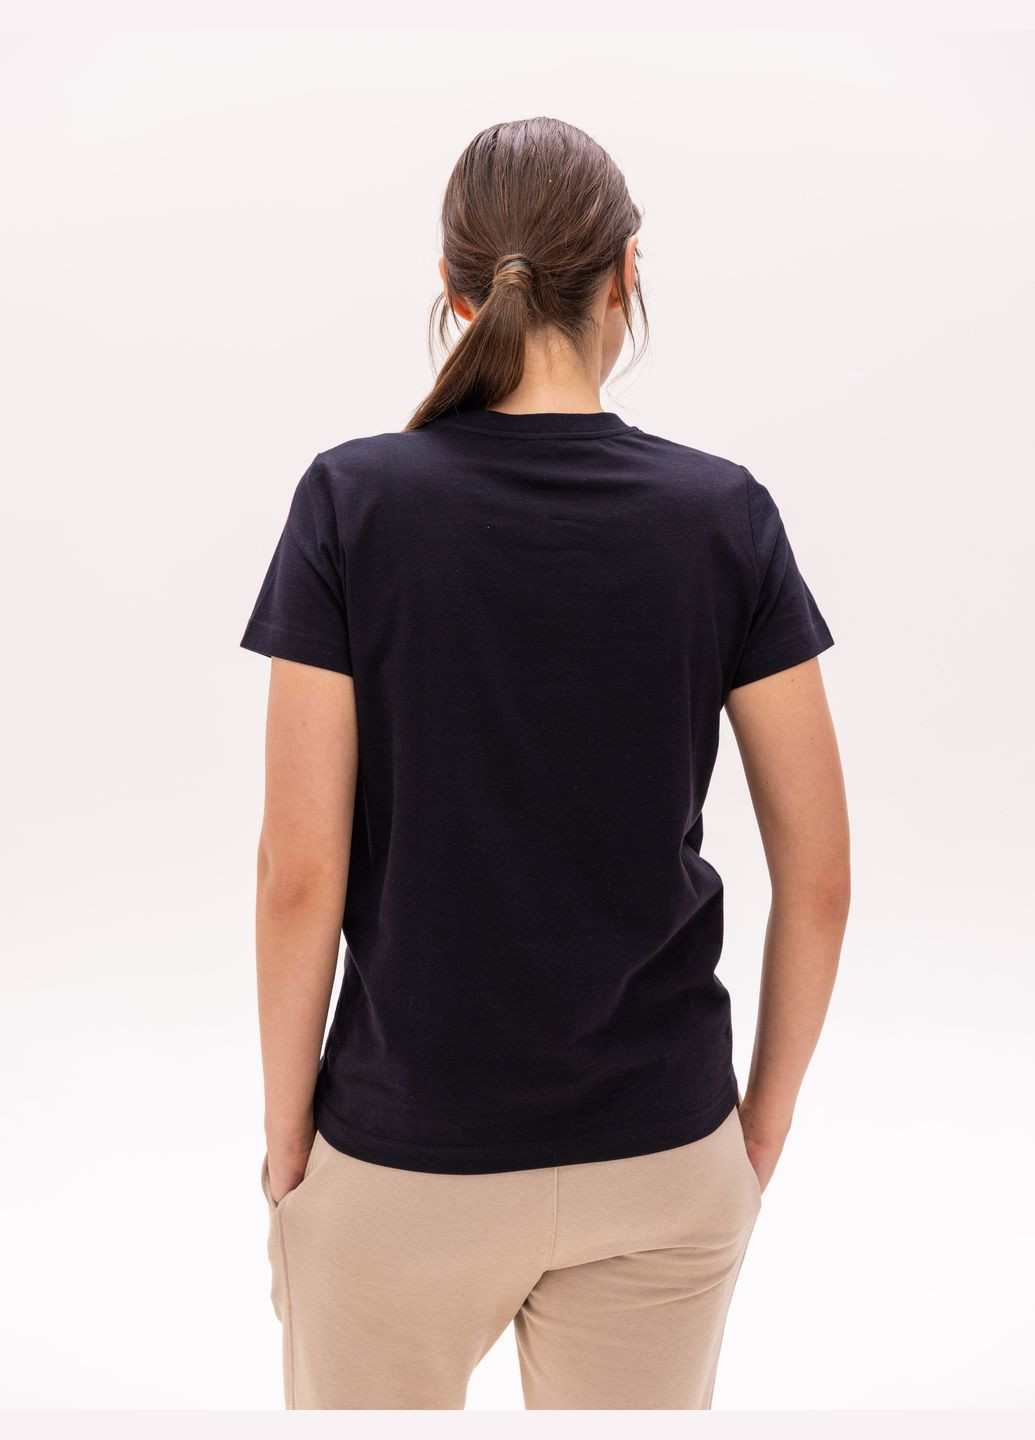 Черная летняя футболка женская базовая с коротким рукавом Роза